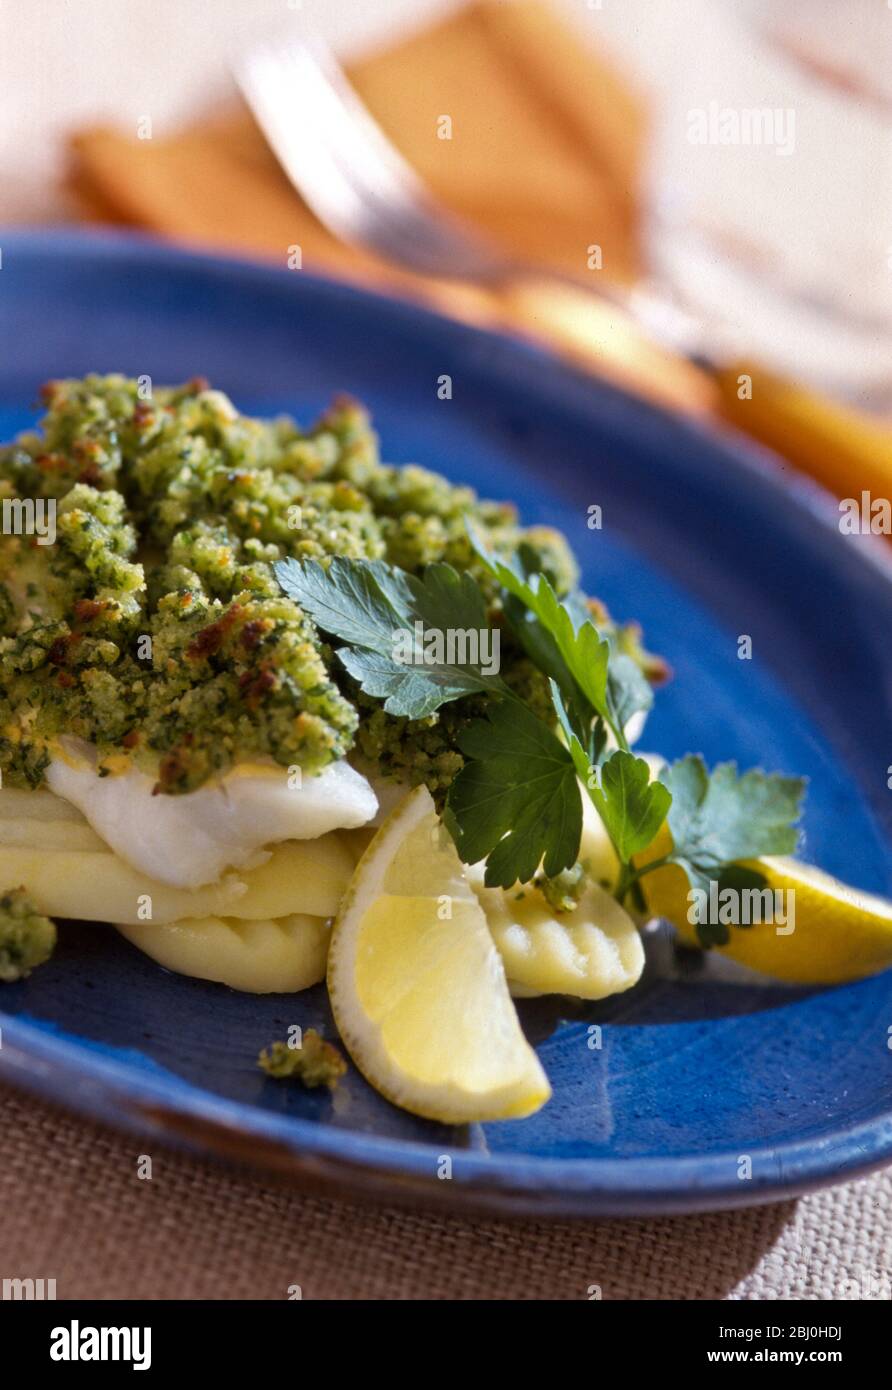 Fisch mit Petersilie-Kräuterkruste auf gedämpften, zerkratztem Kartoffeln, serviert mit Zitronenpfeilern auf blauem Teller. - Stockfoto